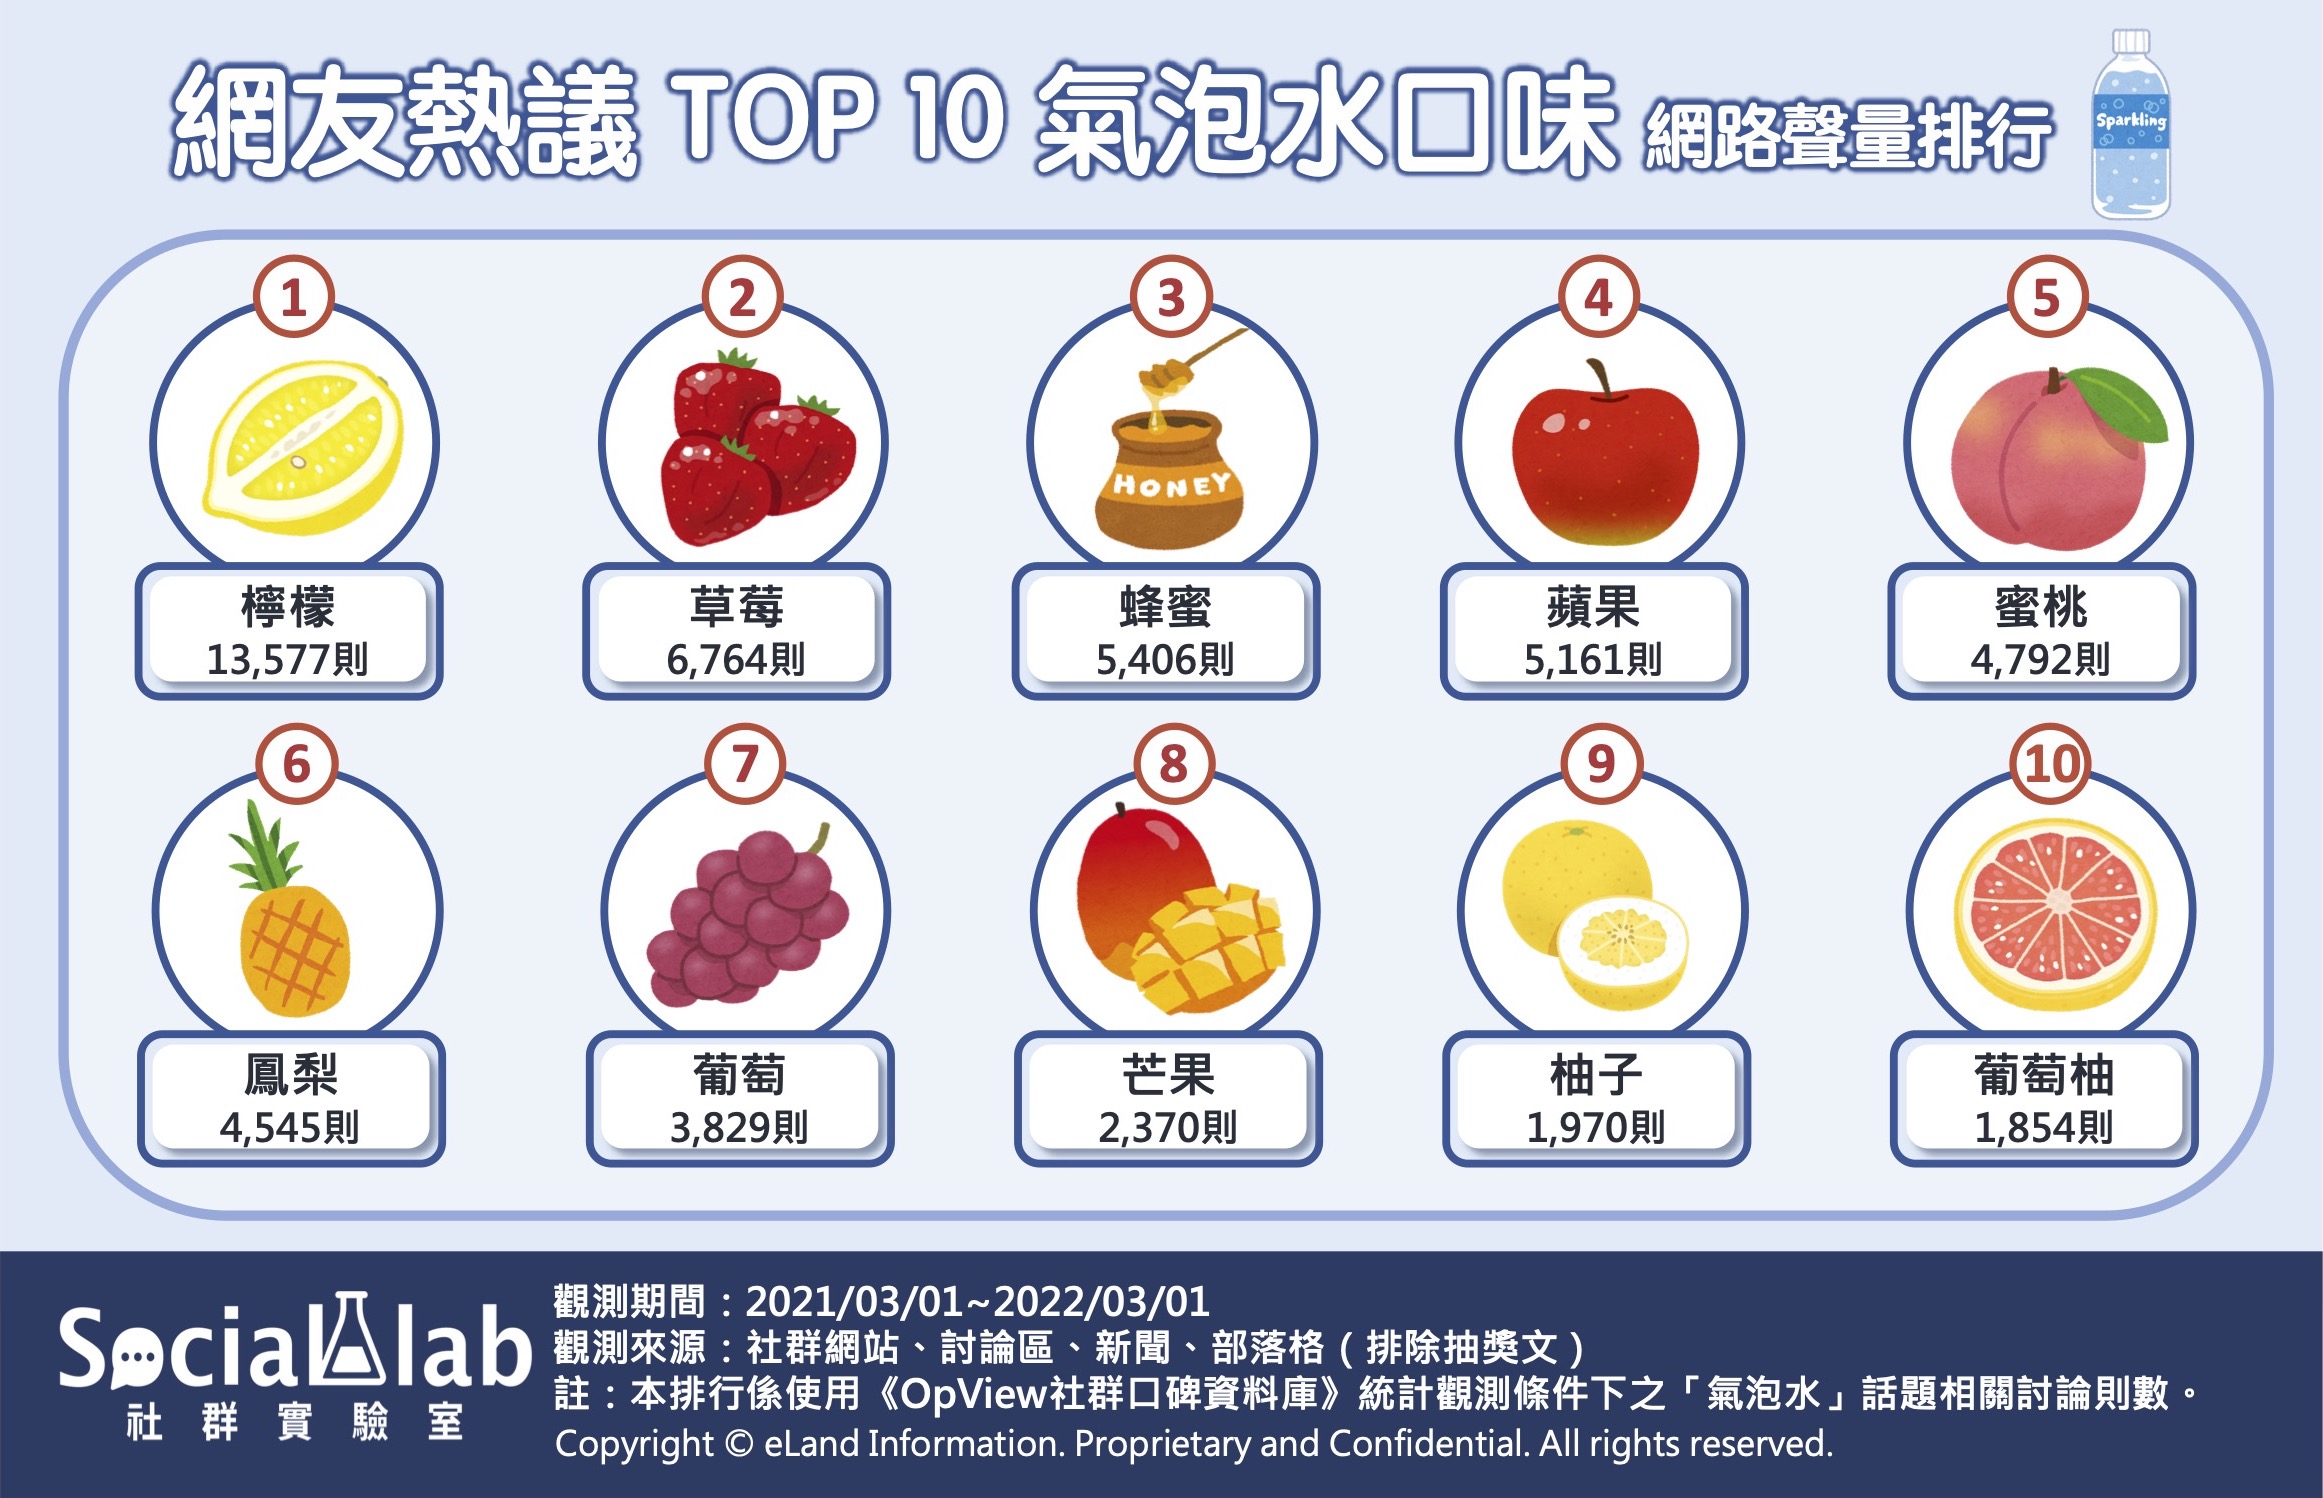 網友熱議TOP10氣泡水口味網路聲量排行